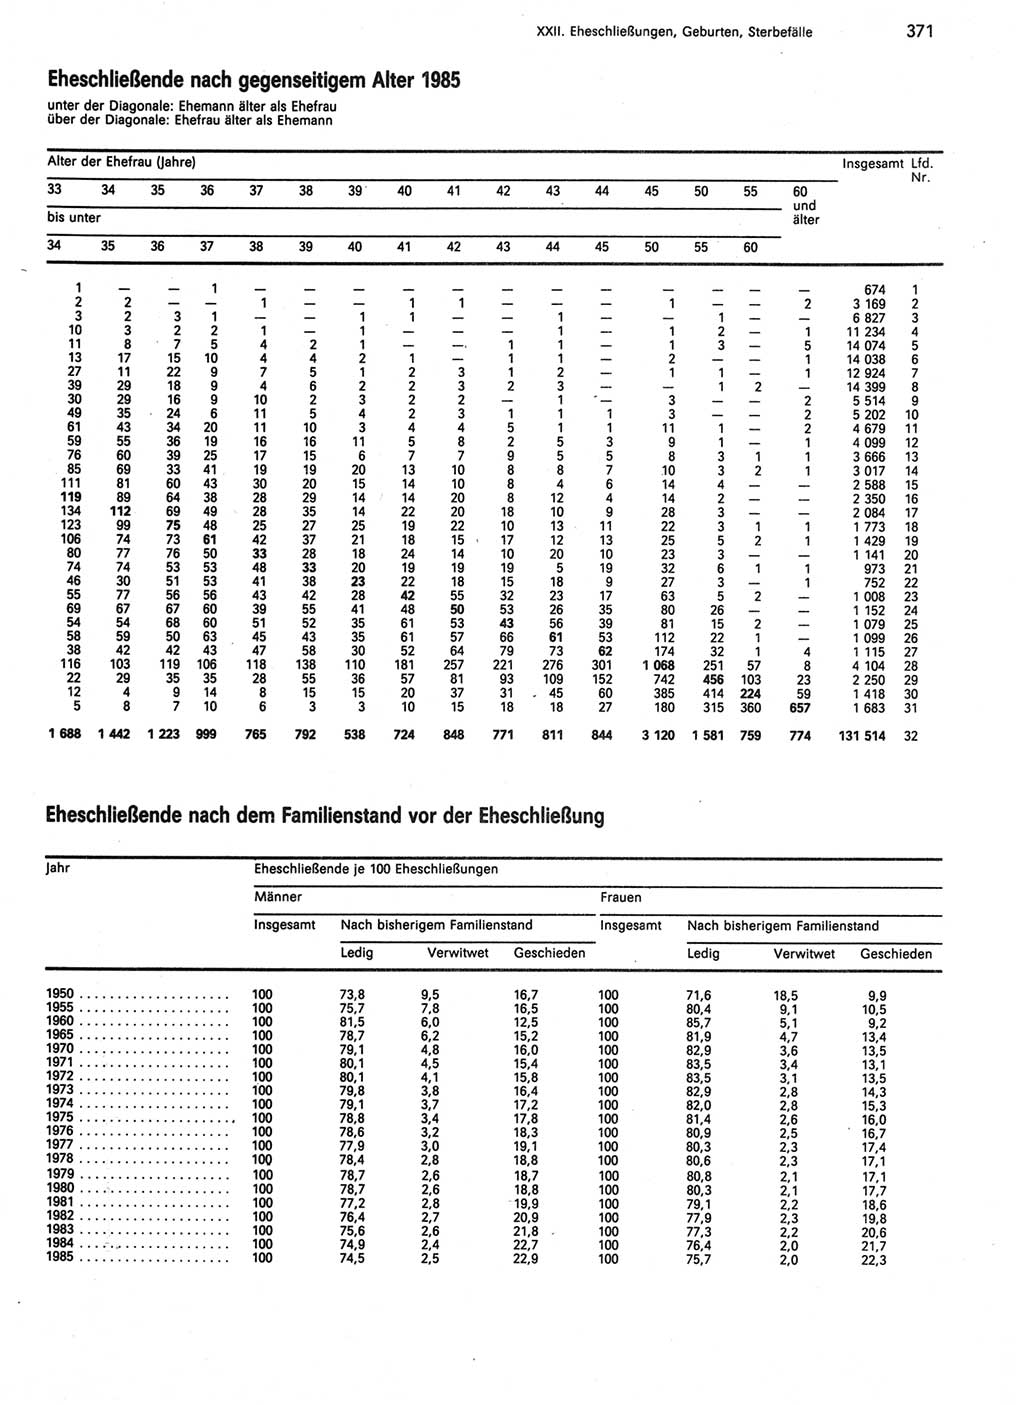 Statistisches Jahrbuch der Deutschen Demokratischen Republik (DDR) 1987, Seite 371 (Stat. Jb. DDR 1987, S. 371)